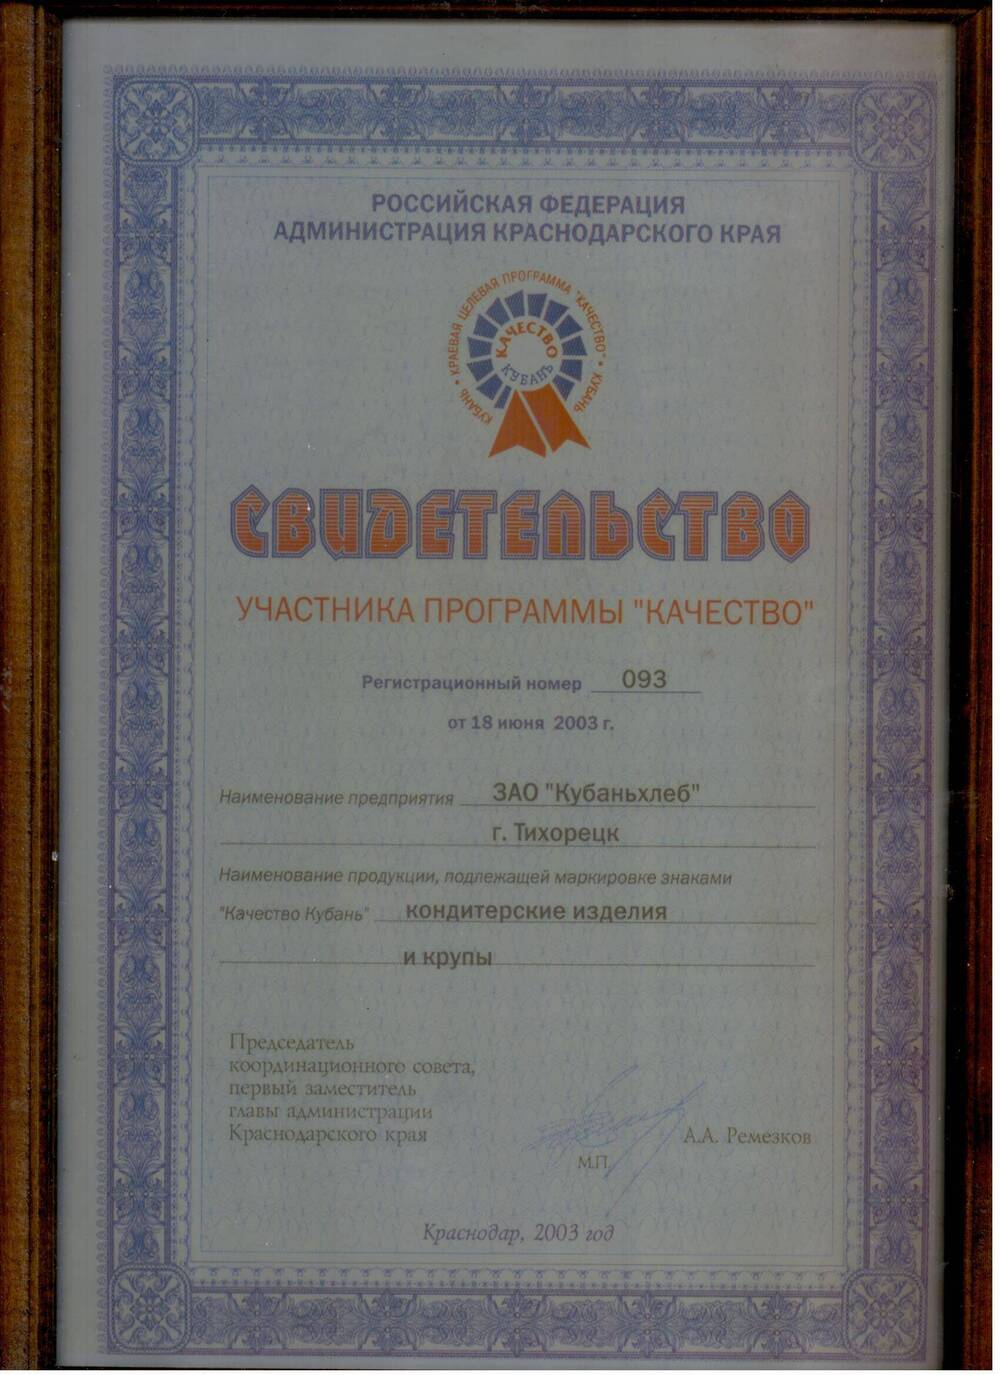 Свидетельство участника программы Качество Российской Федерации администрации Краснодарского края № 093 от 18июня 2003 года .